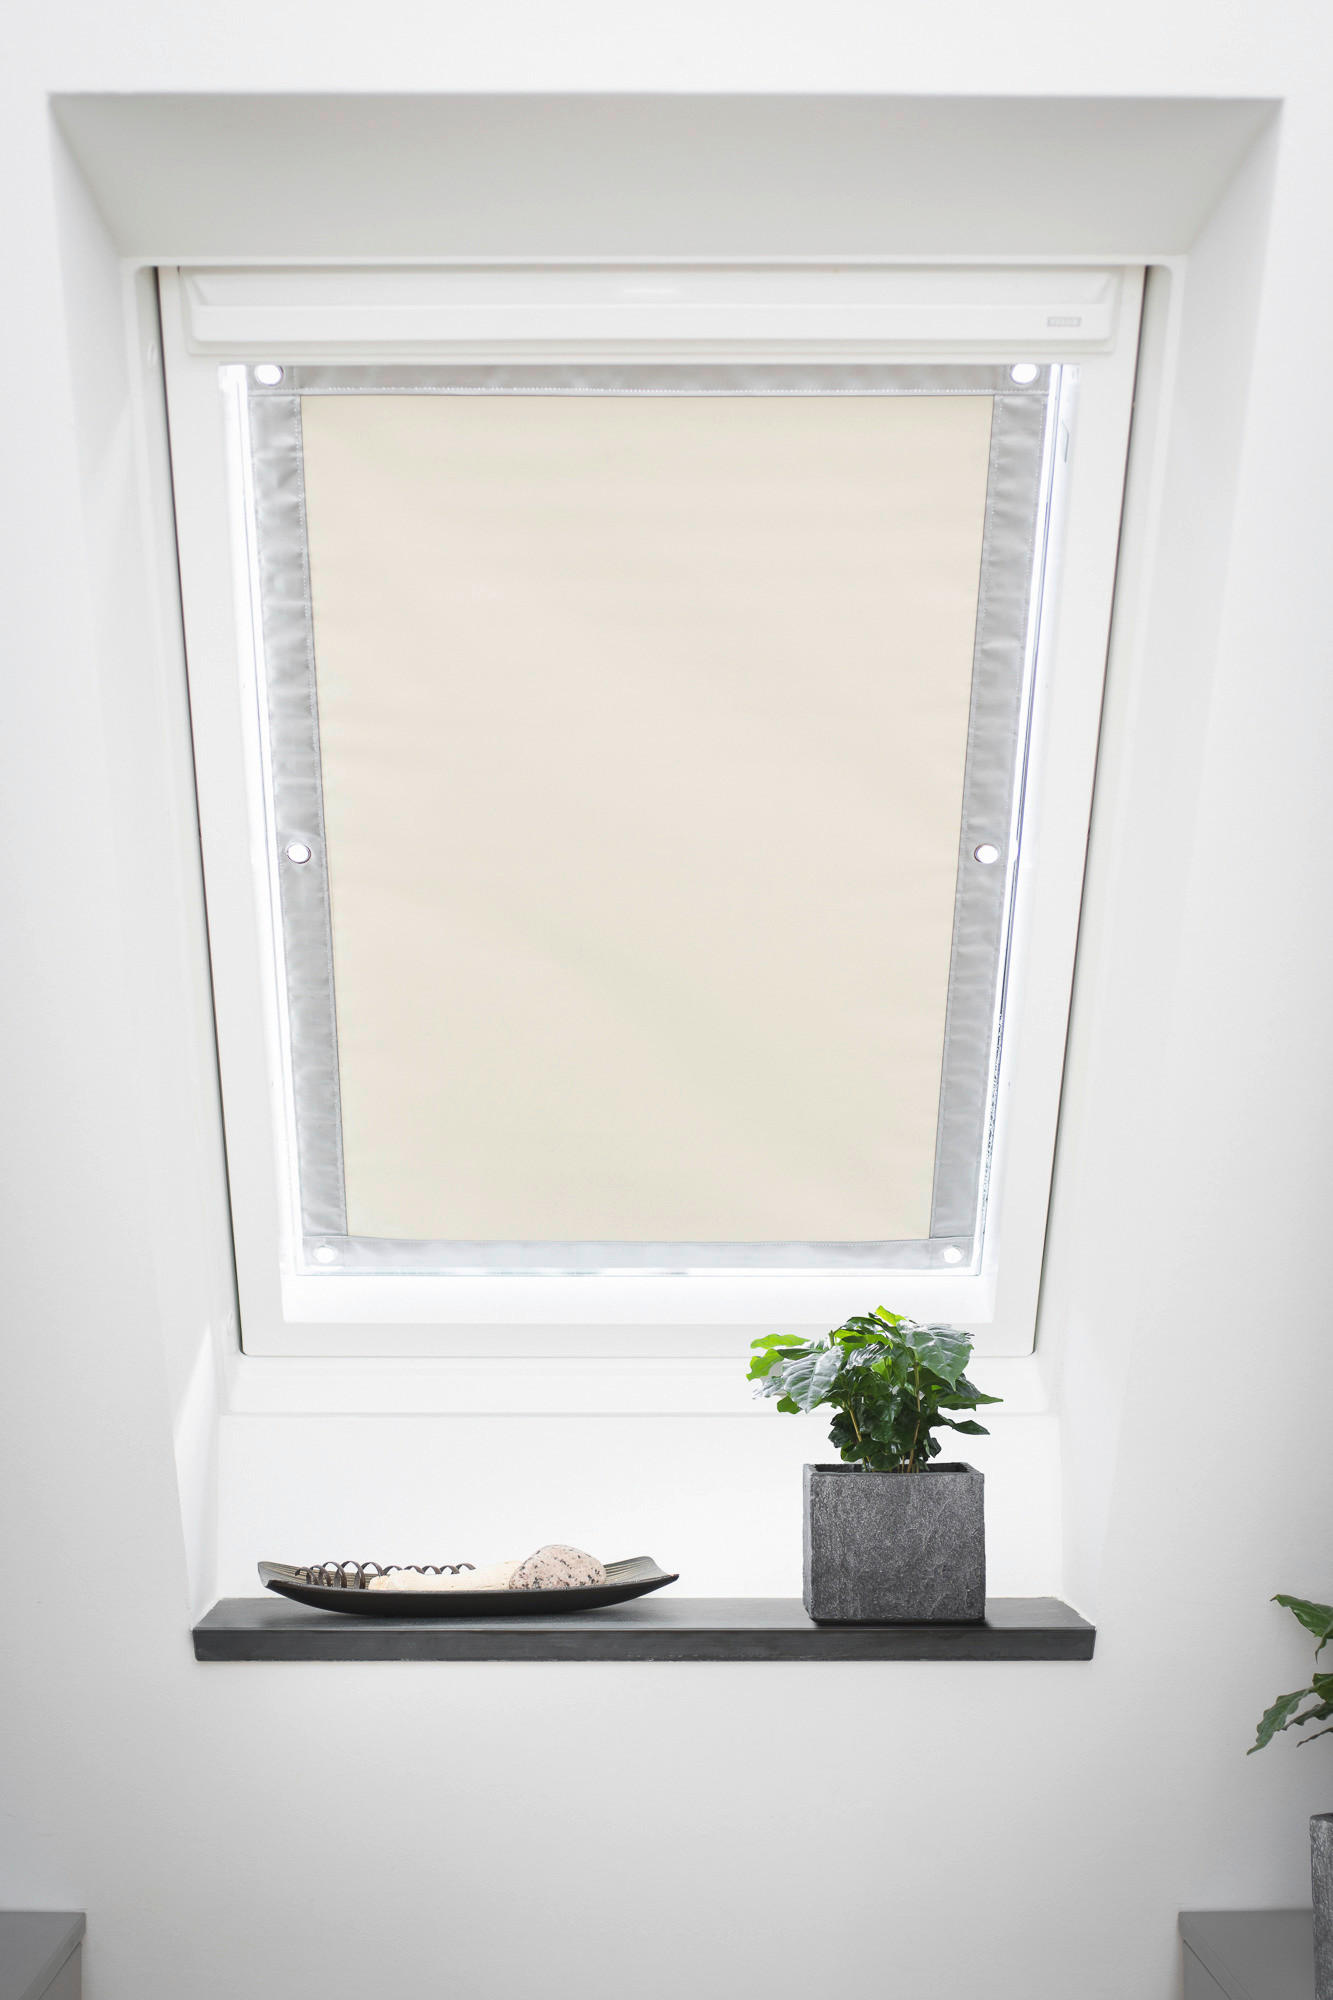 Dachfenster-Sonnenschutz VD beige B/L: ca. 47x91,5 cm